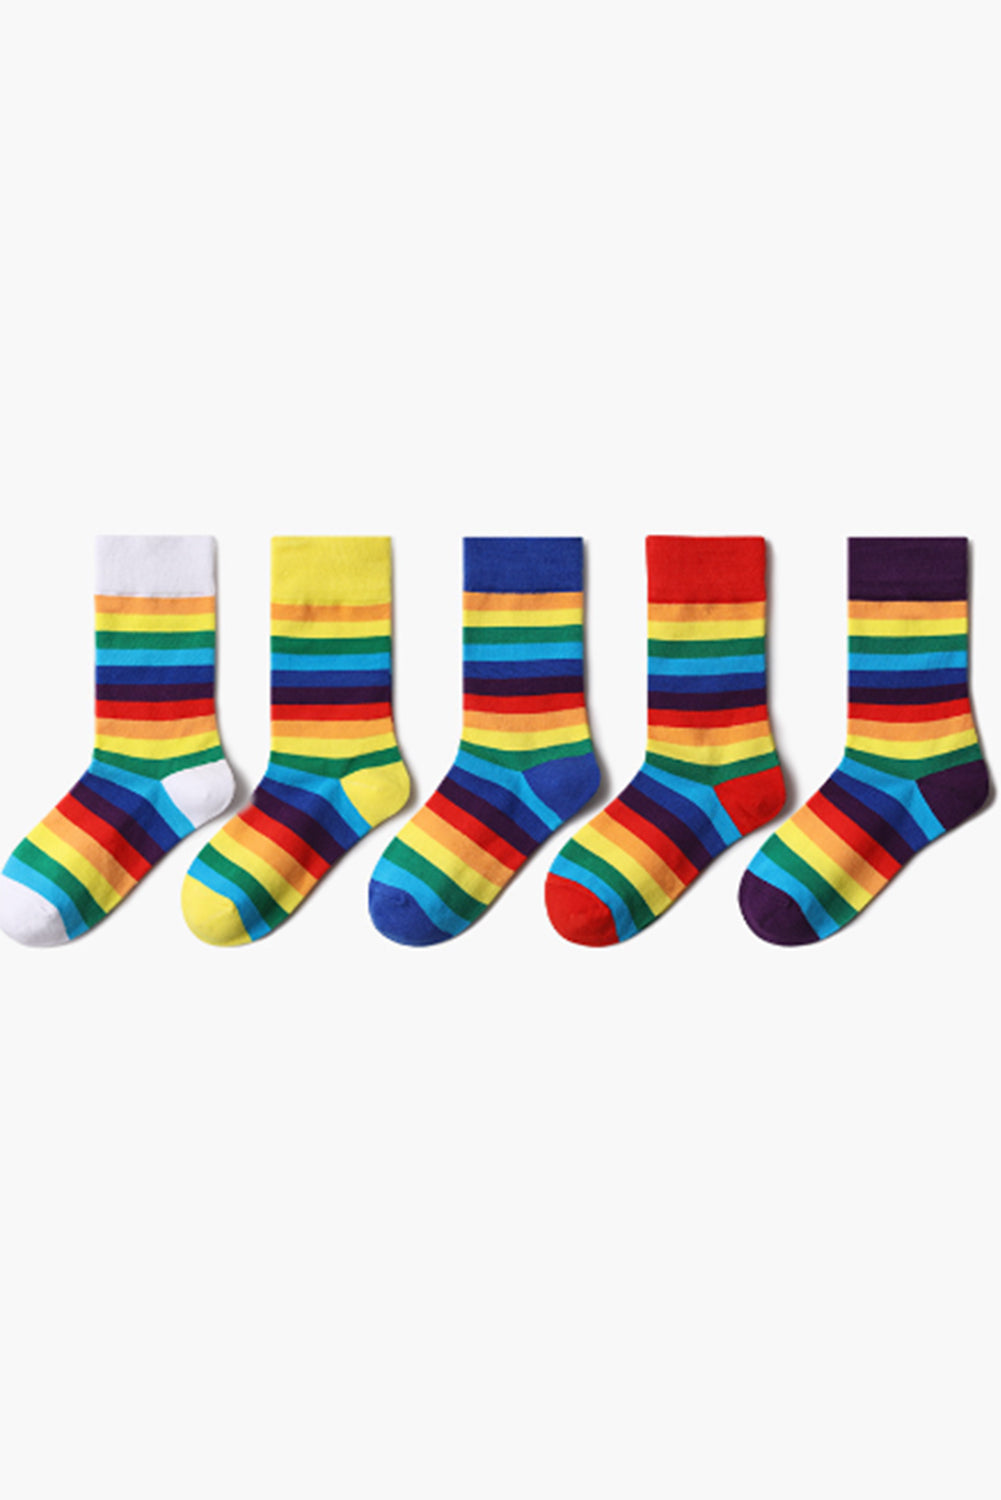 BH041619-11, Gray Pride Sport Socks Men Women Rainbow LGBTQ Accessories Socks